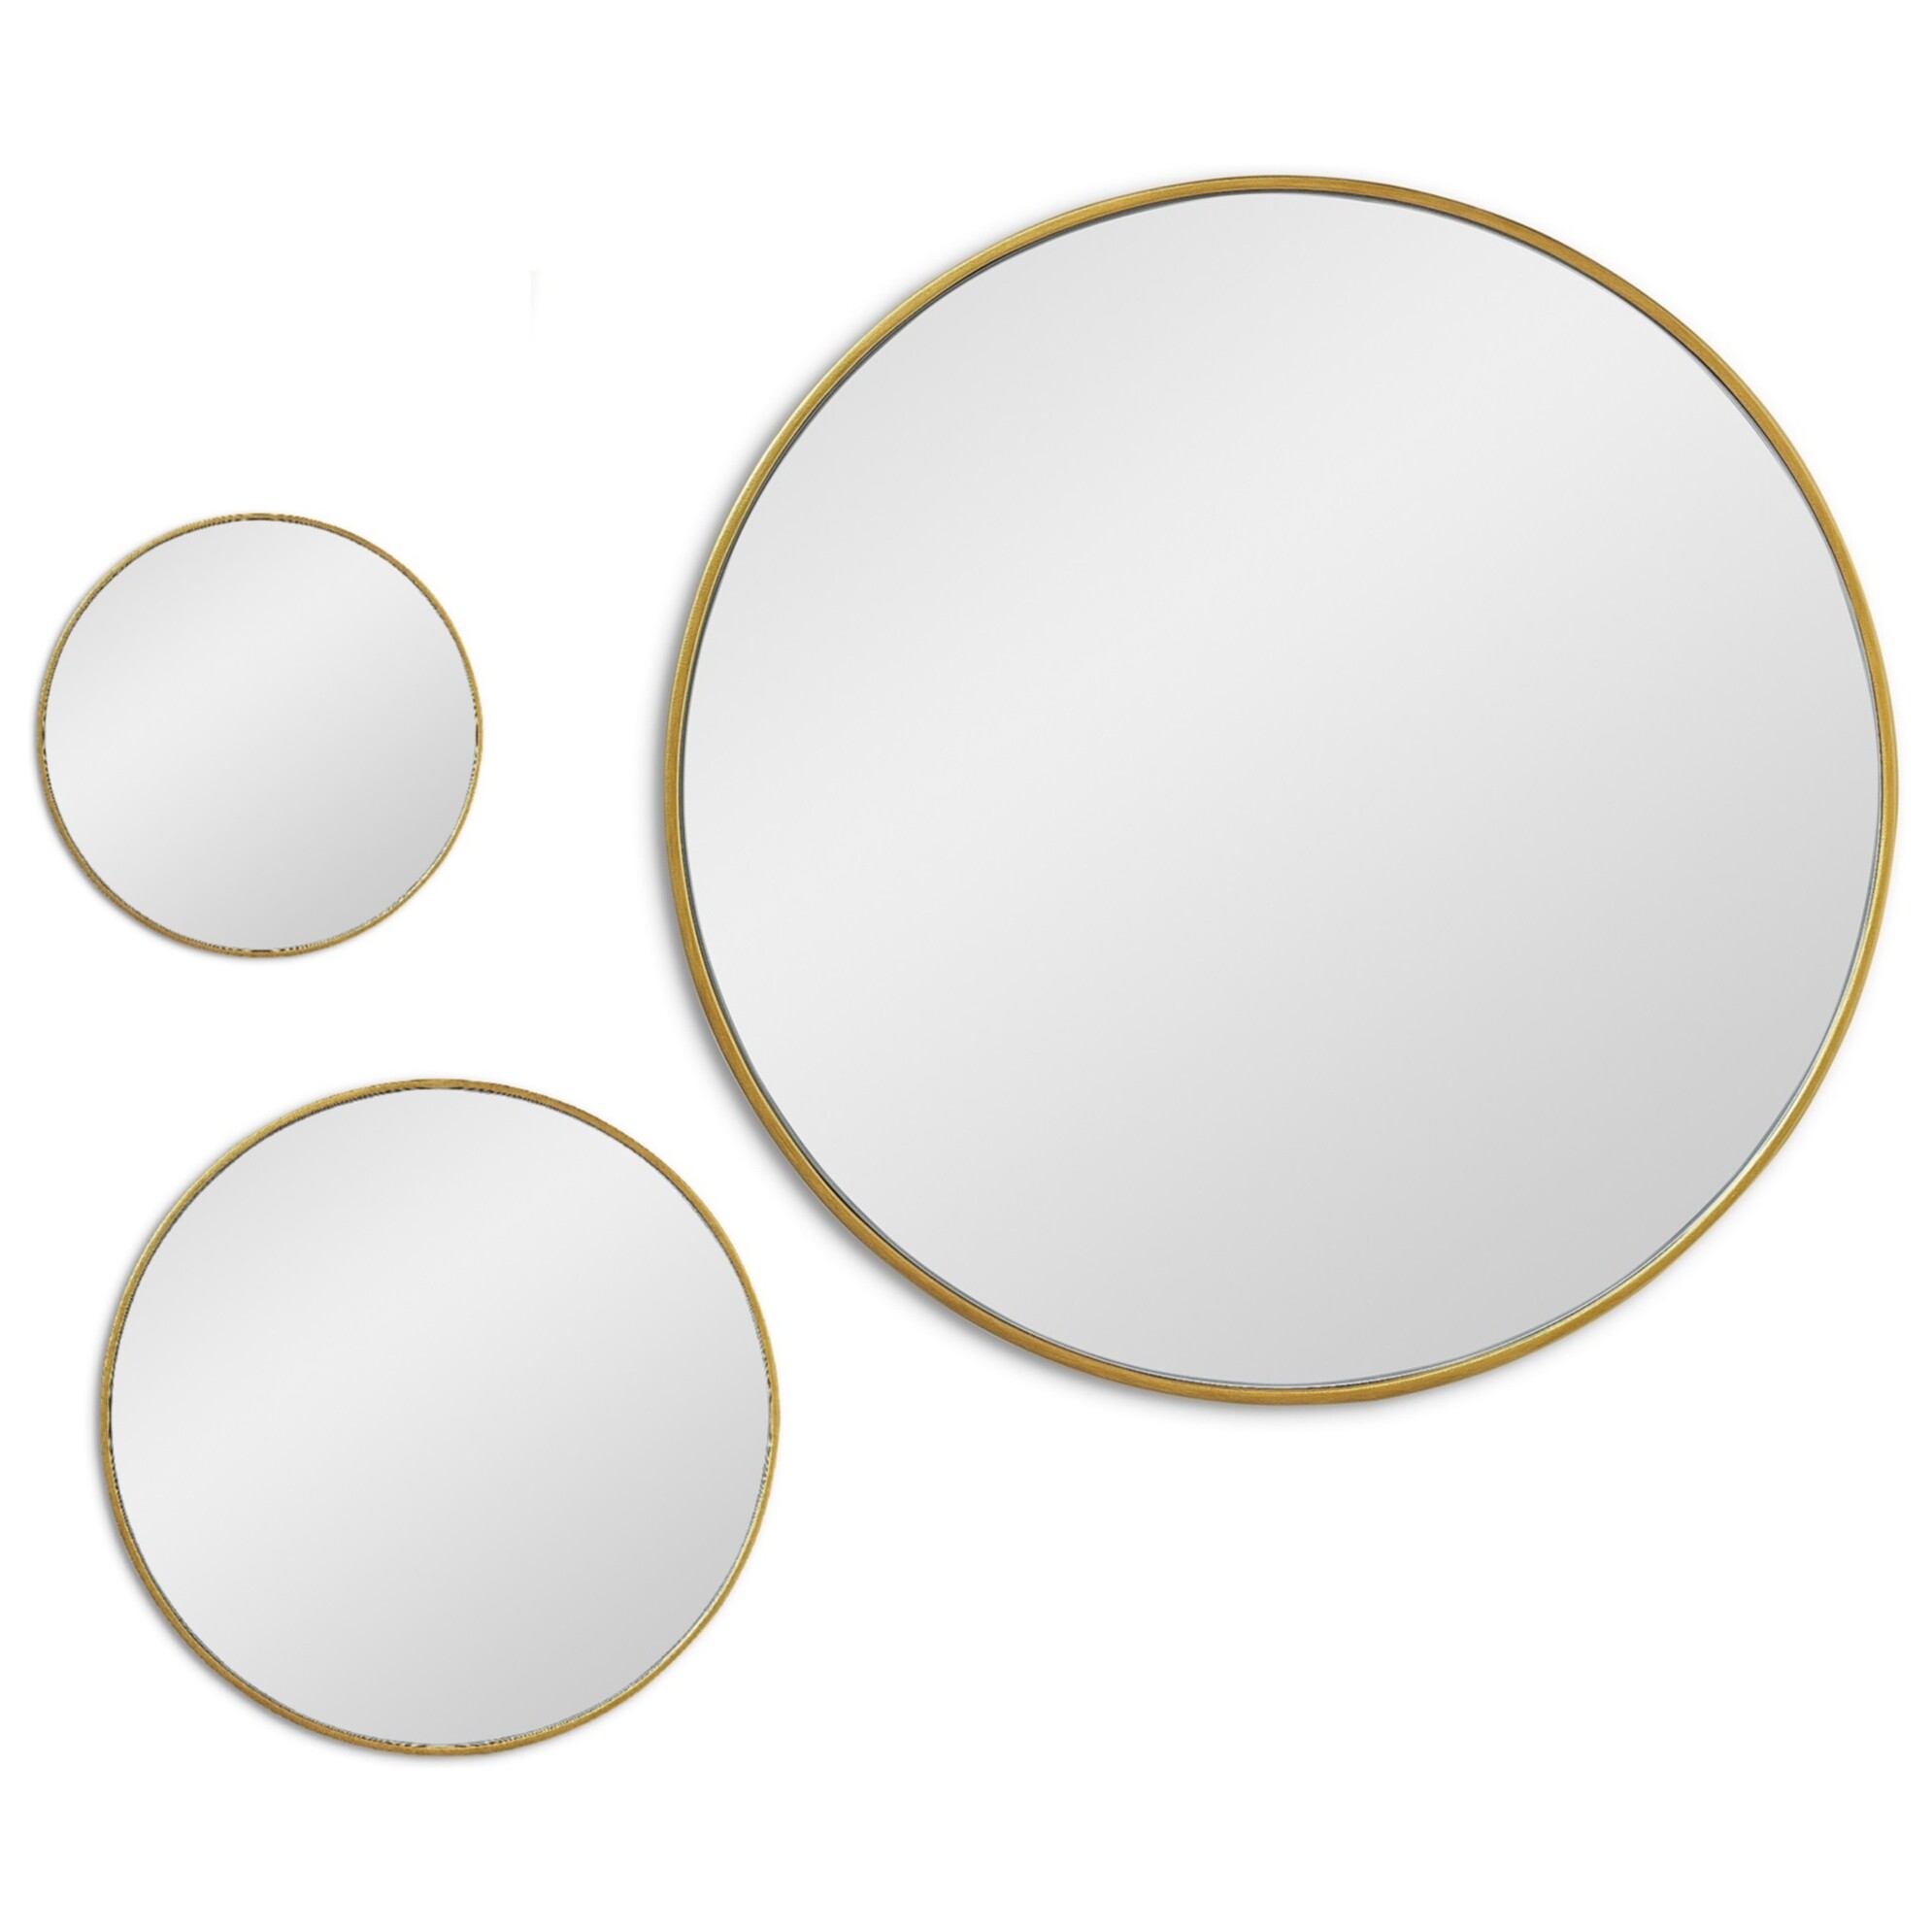 Зеркала настенные круглые в тонкой раме 3 шт золото Mars Gold